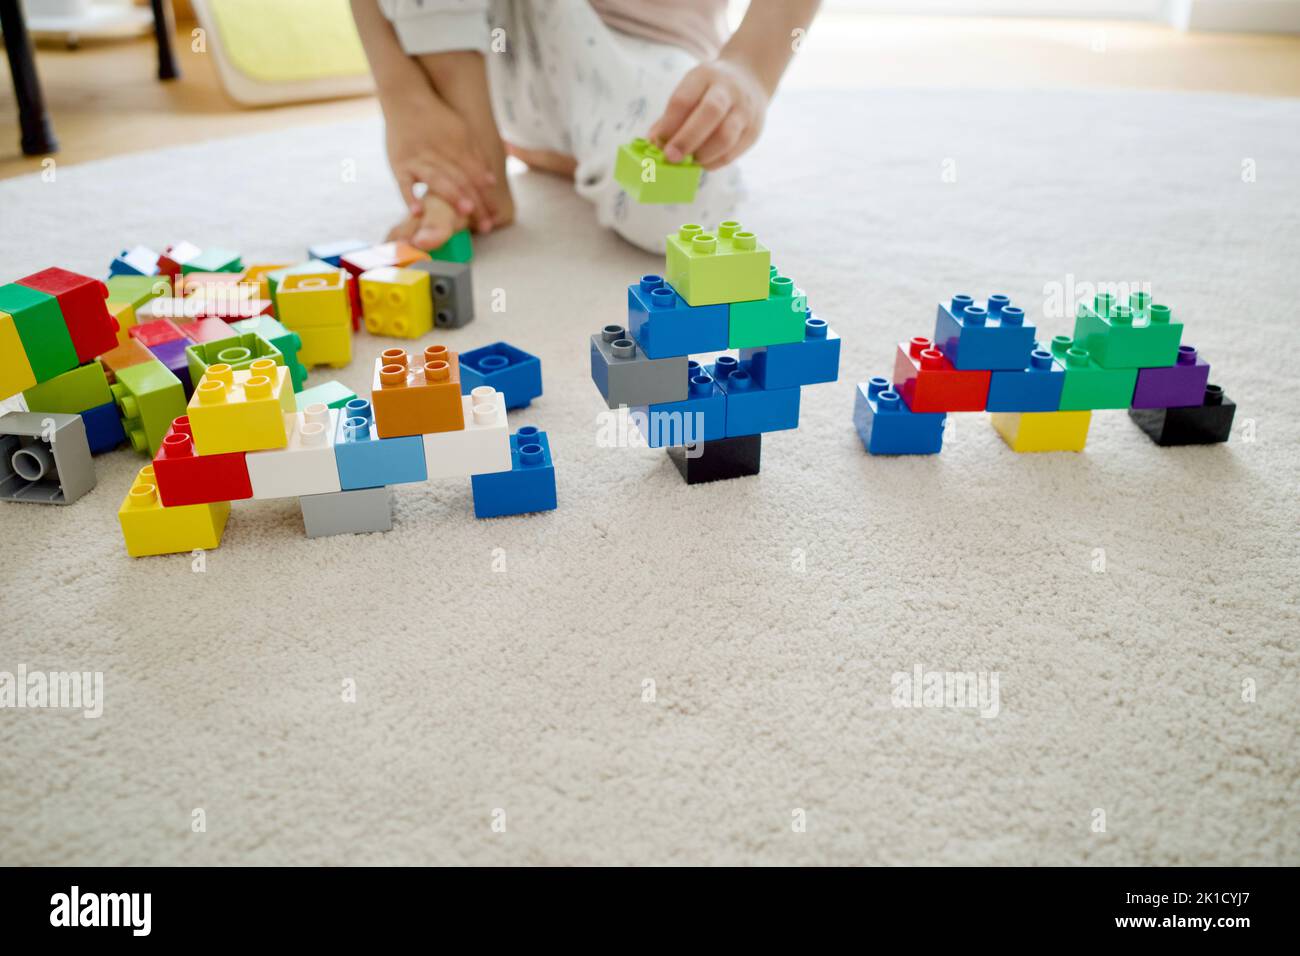 Ein Kind spielt auf einem weißen Teppich Bausteine. Es war tagsüber zu Hause. Stockfoto